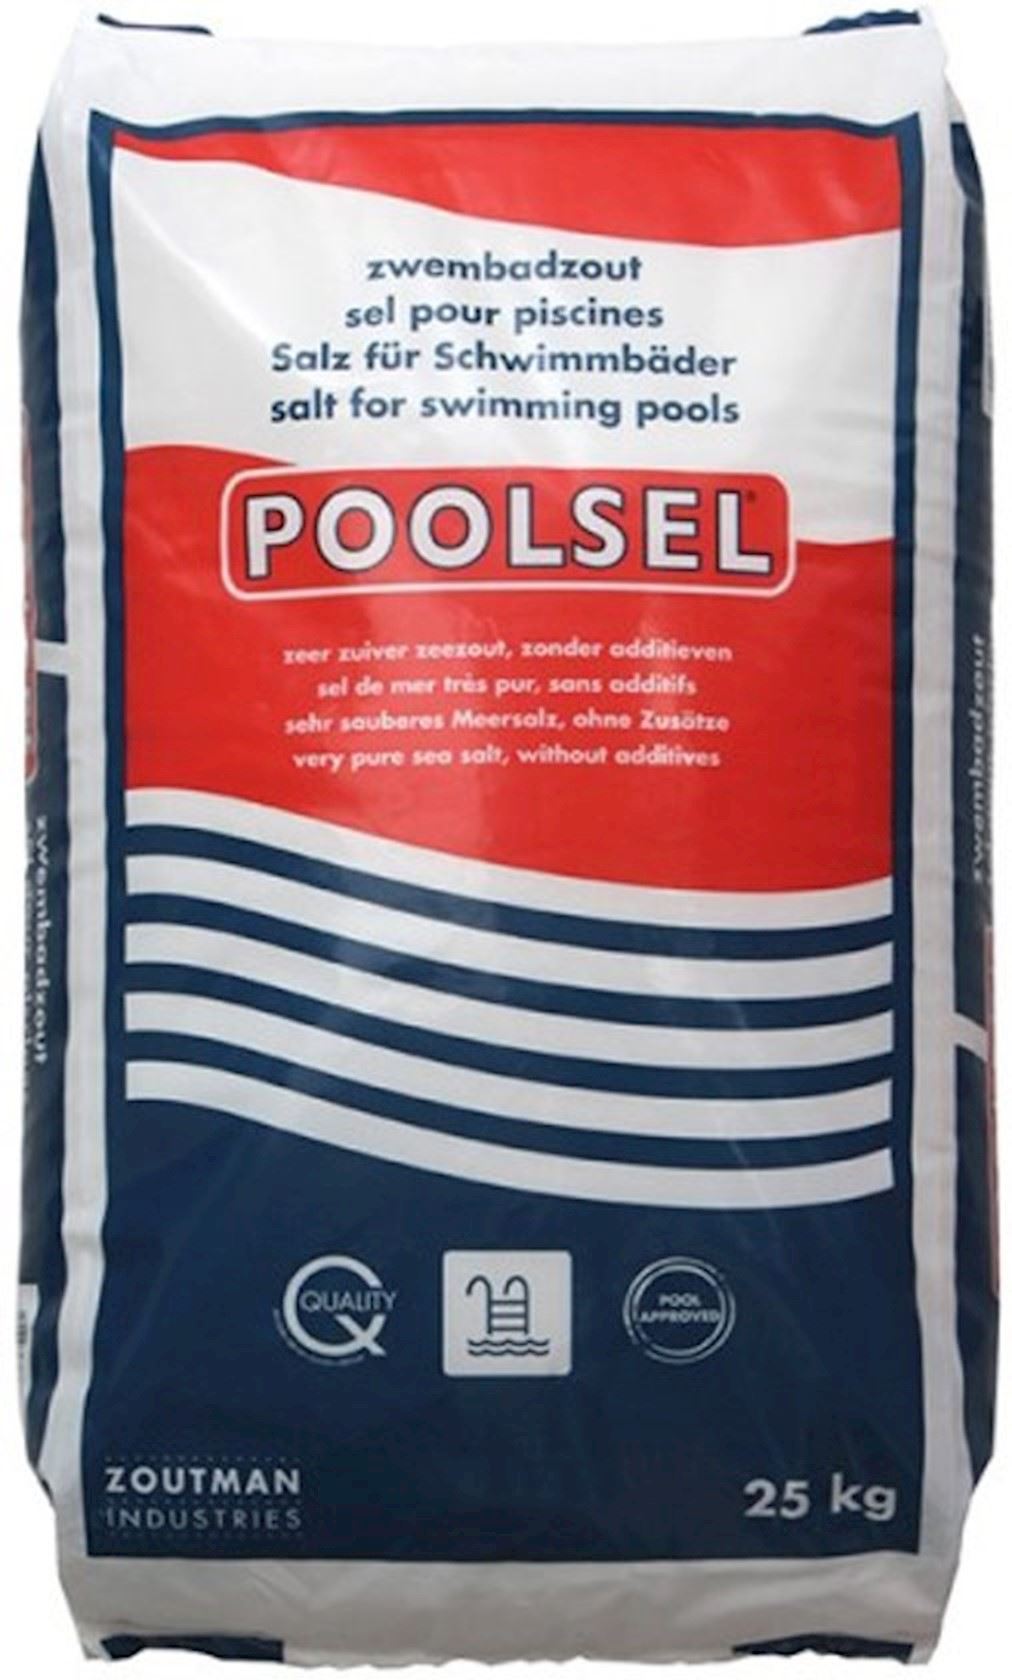 Poolsel refined pool salt 25kg